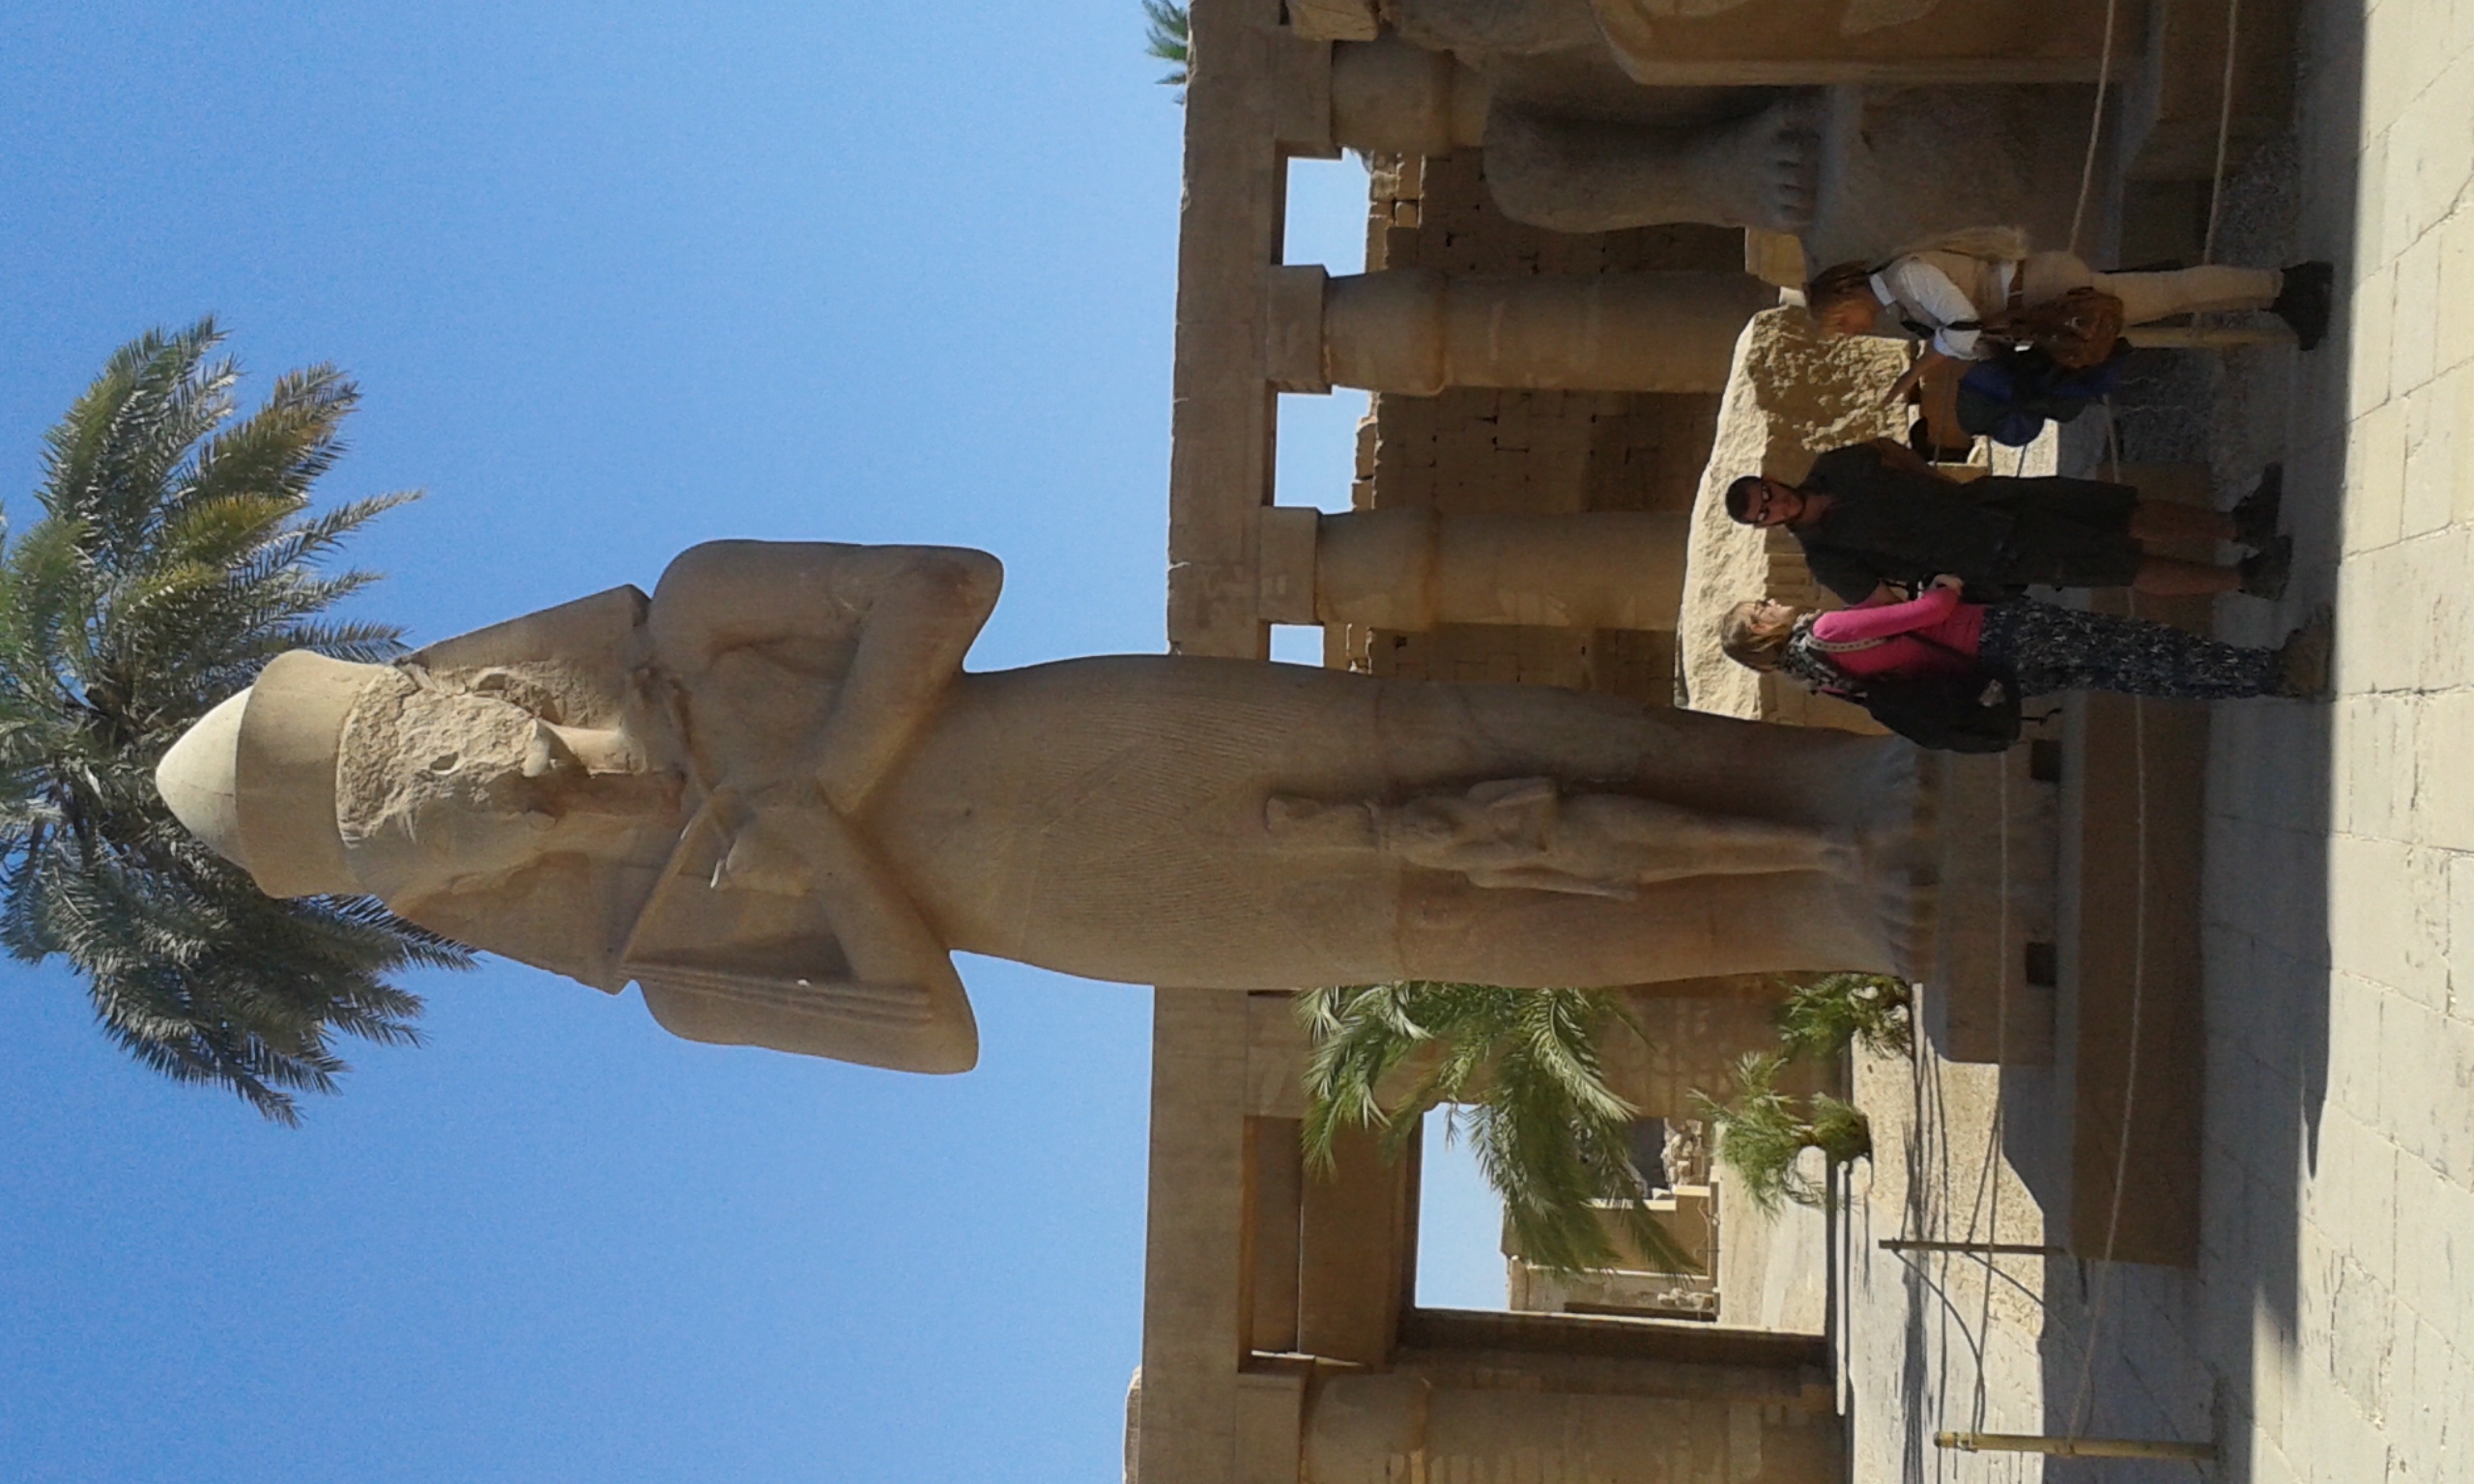 Im Karnak Tempel